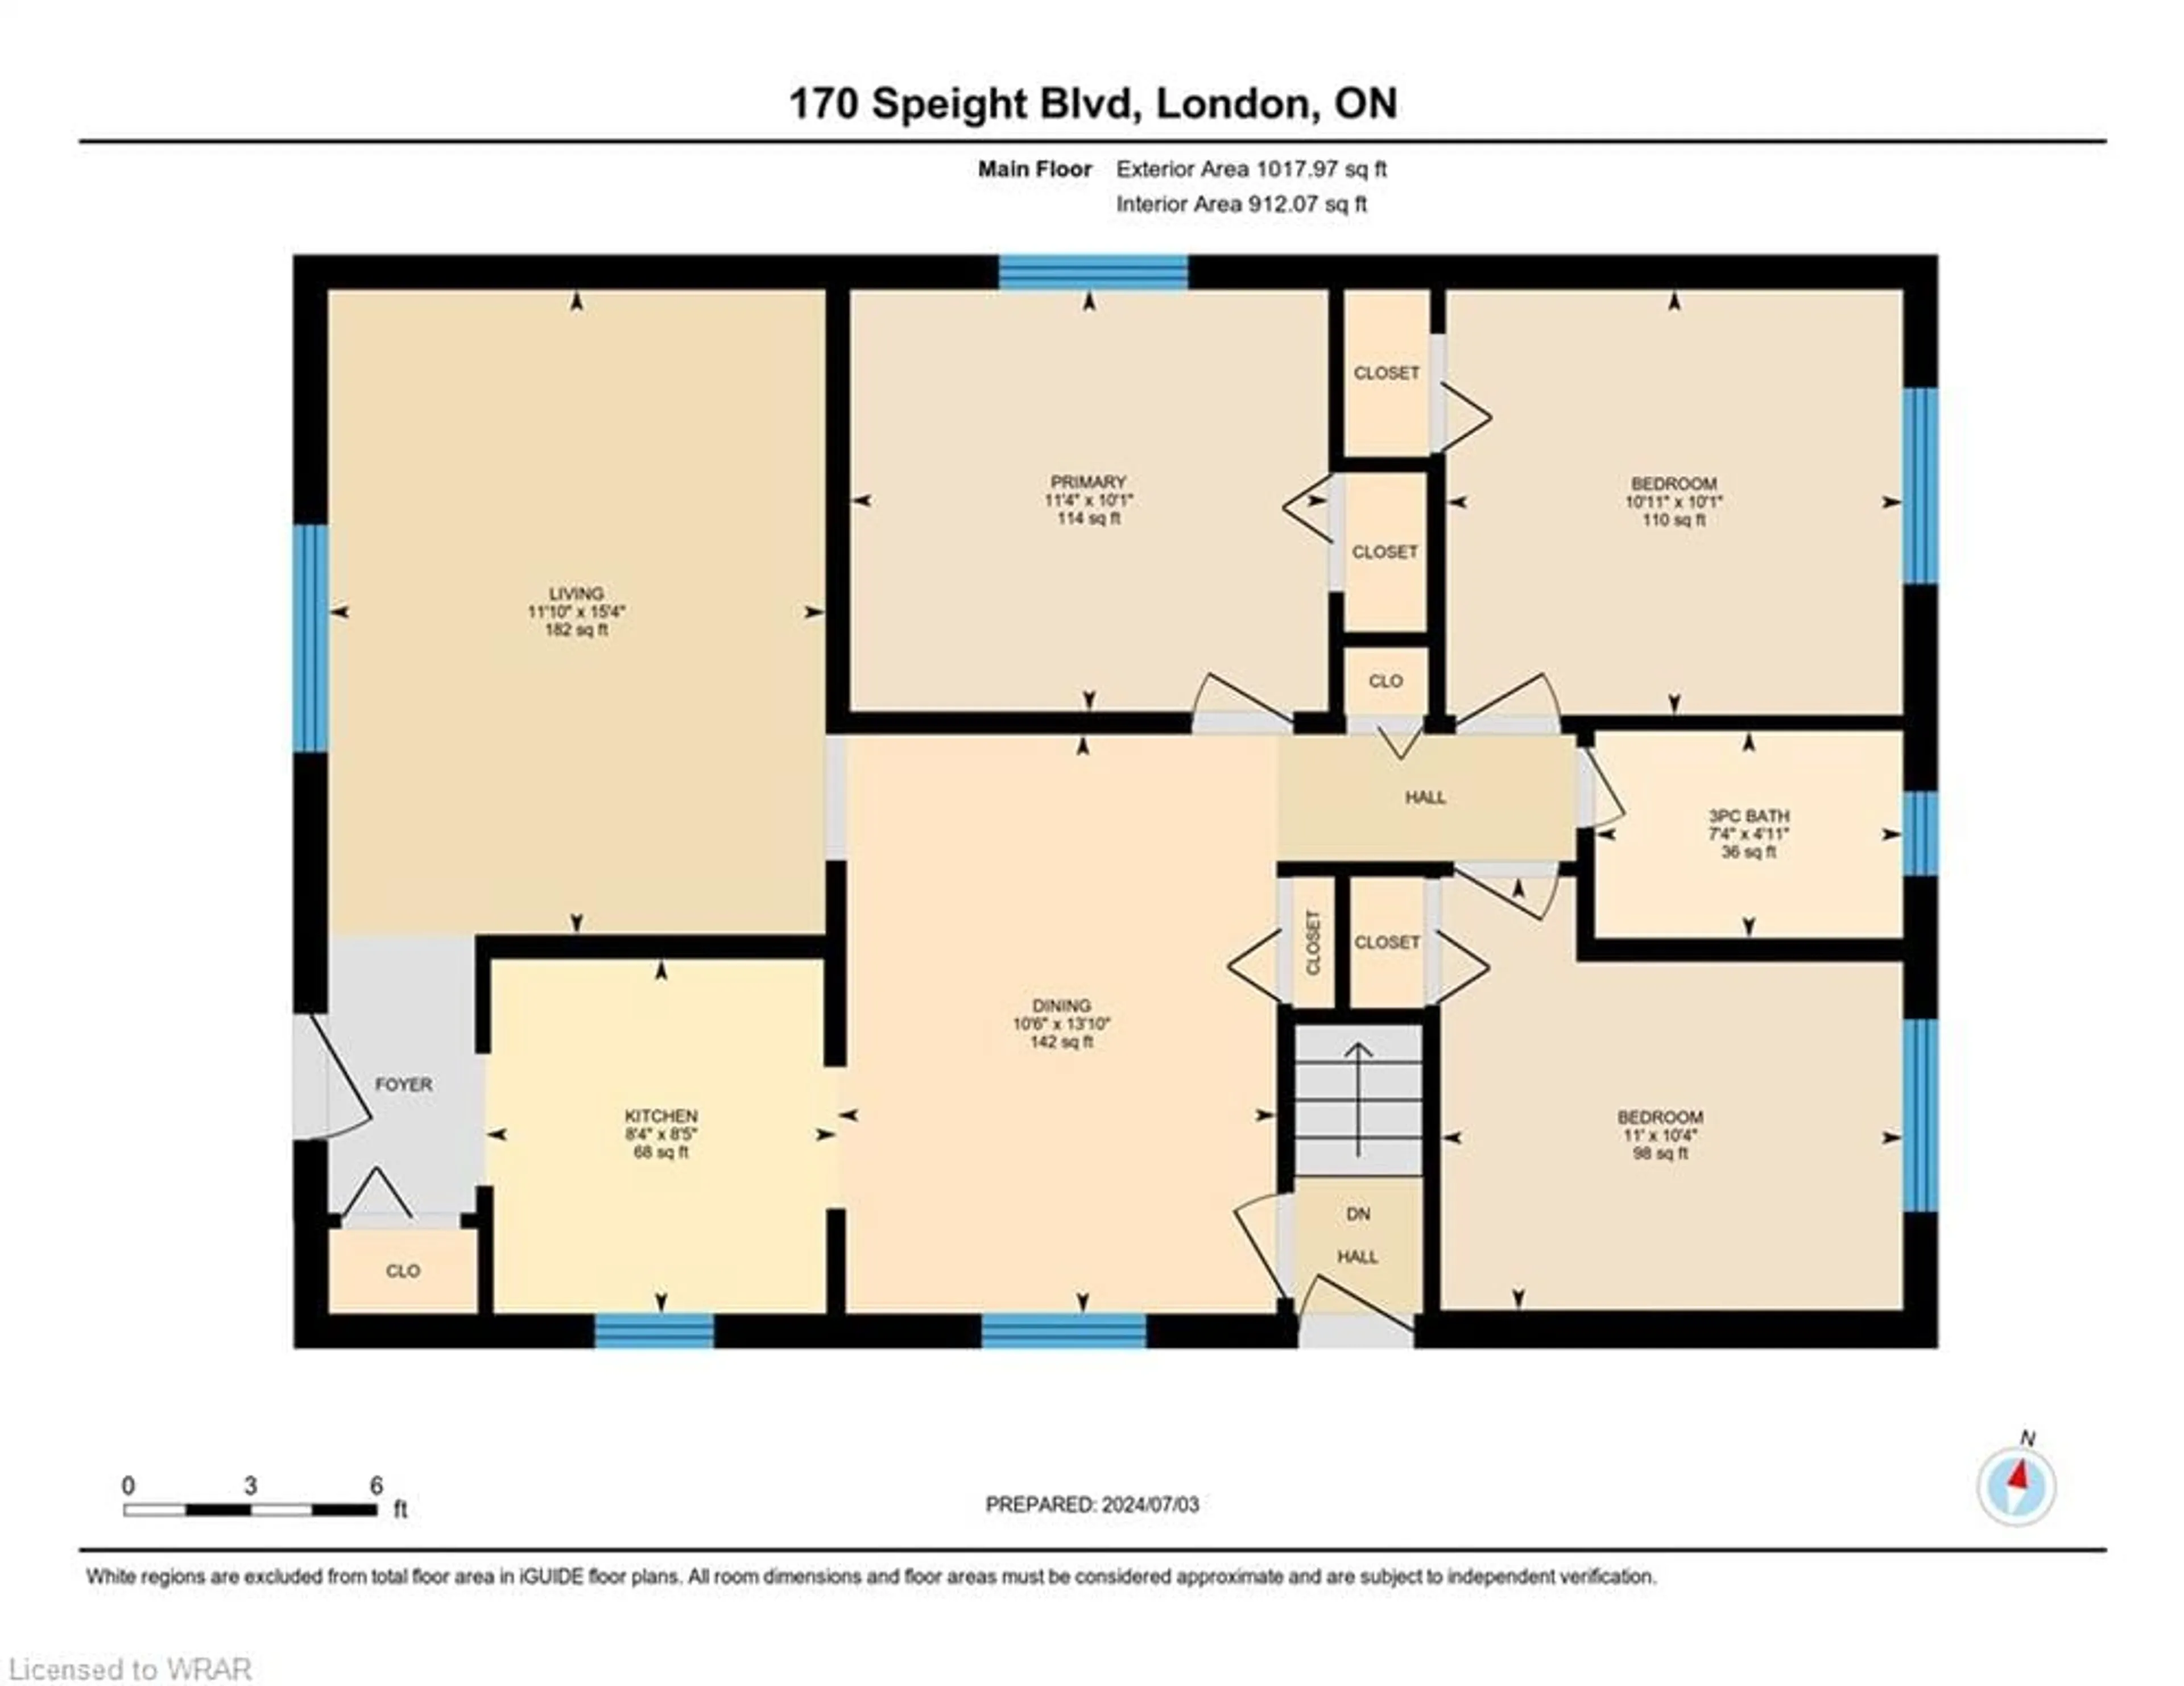 Floor plan for 170 Speight Blvd, London Ontario N5V 3J5